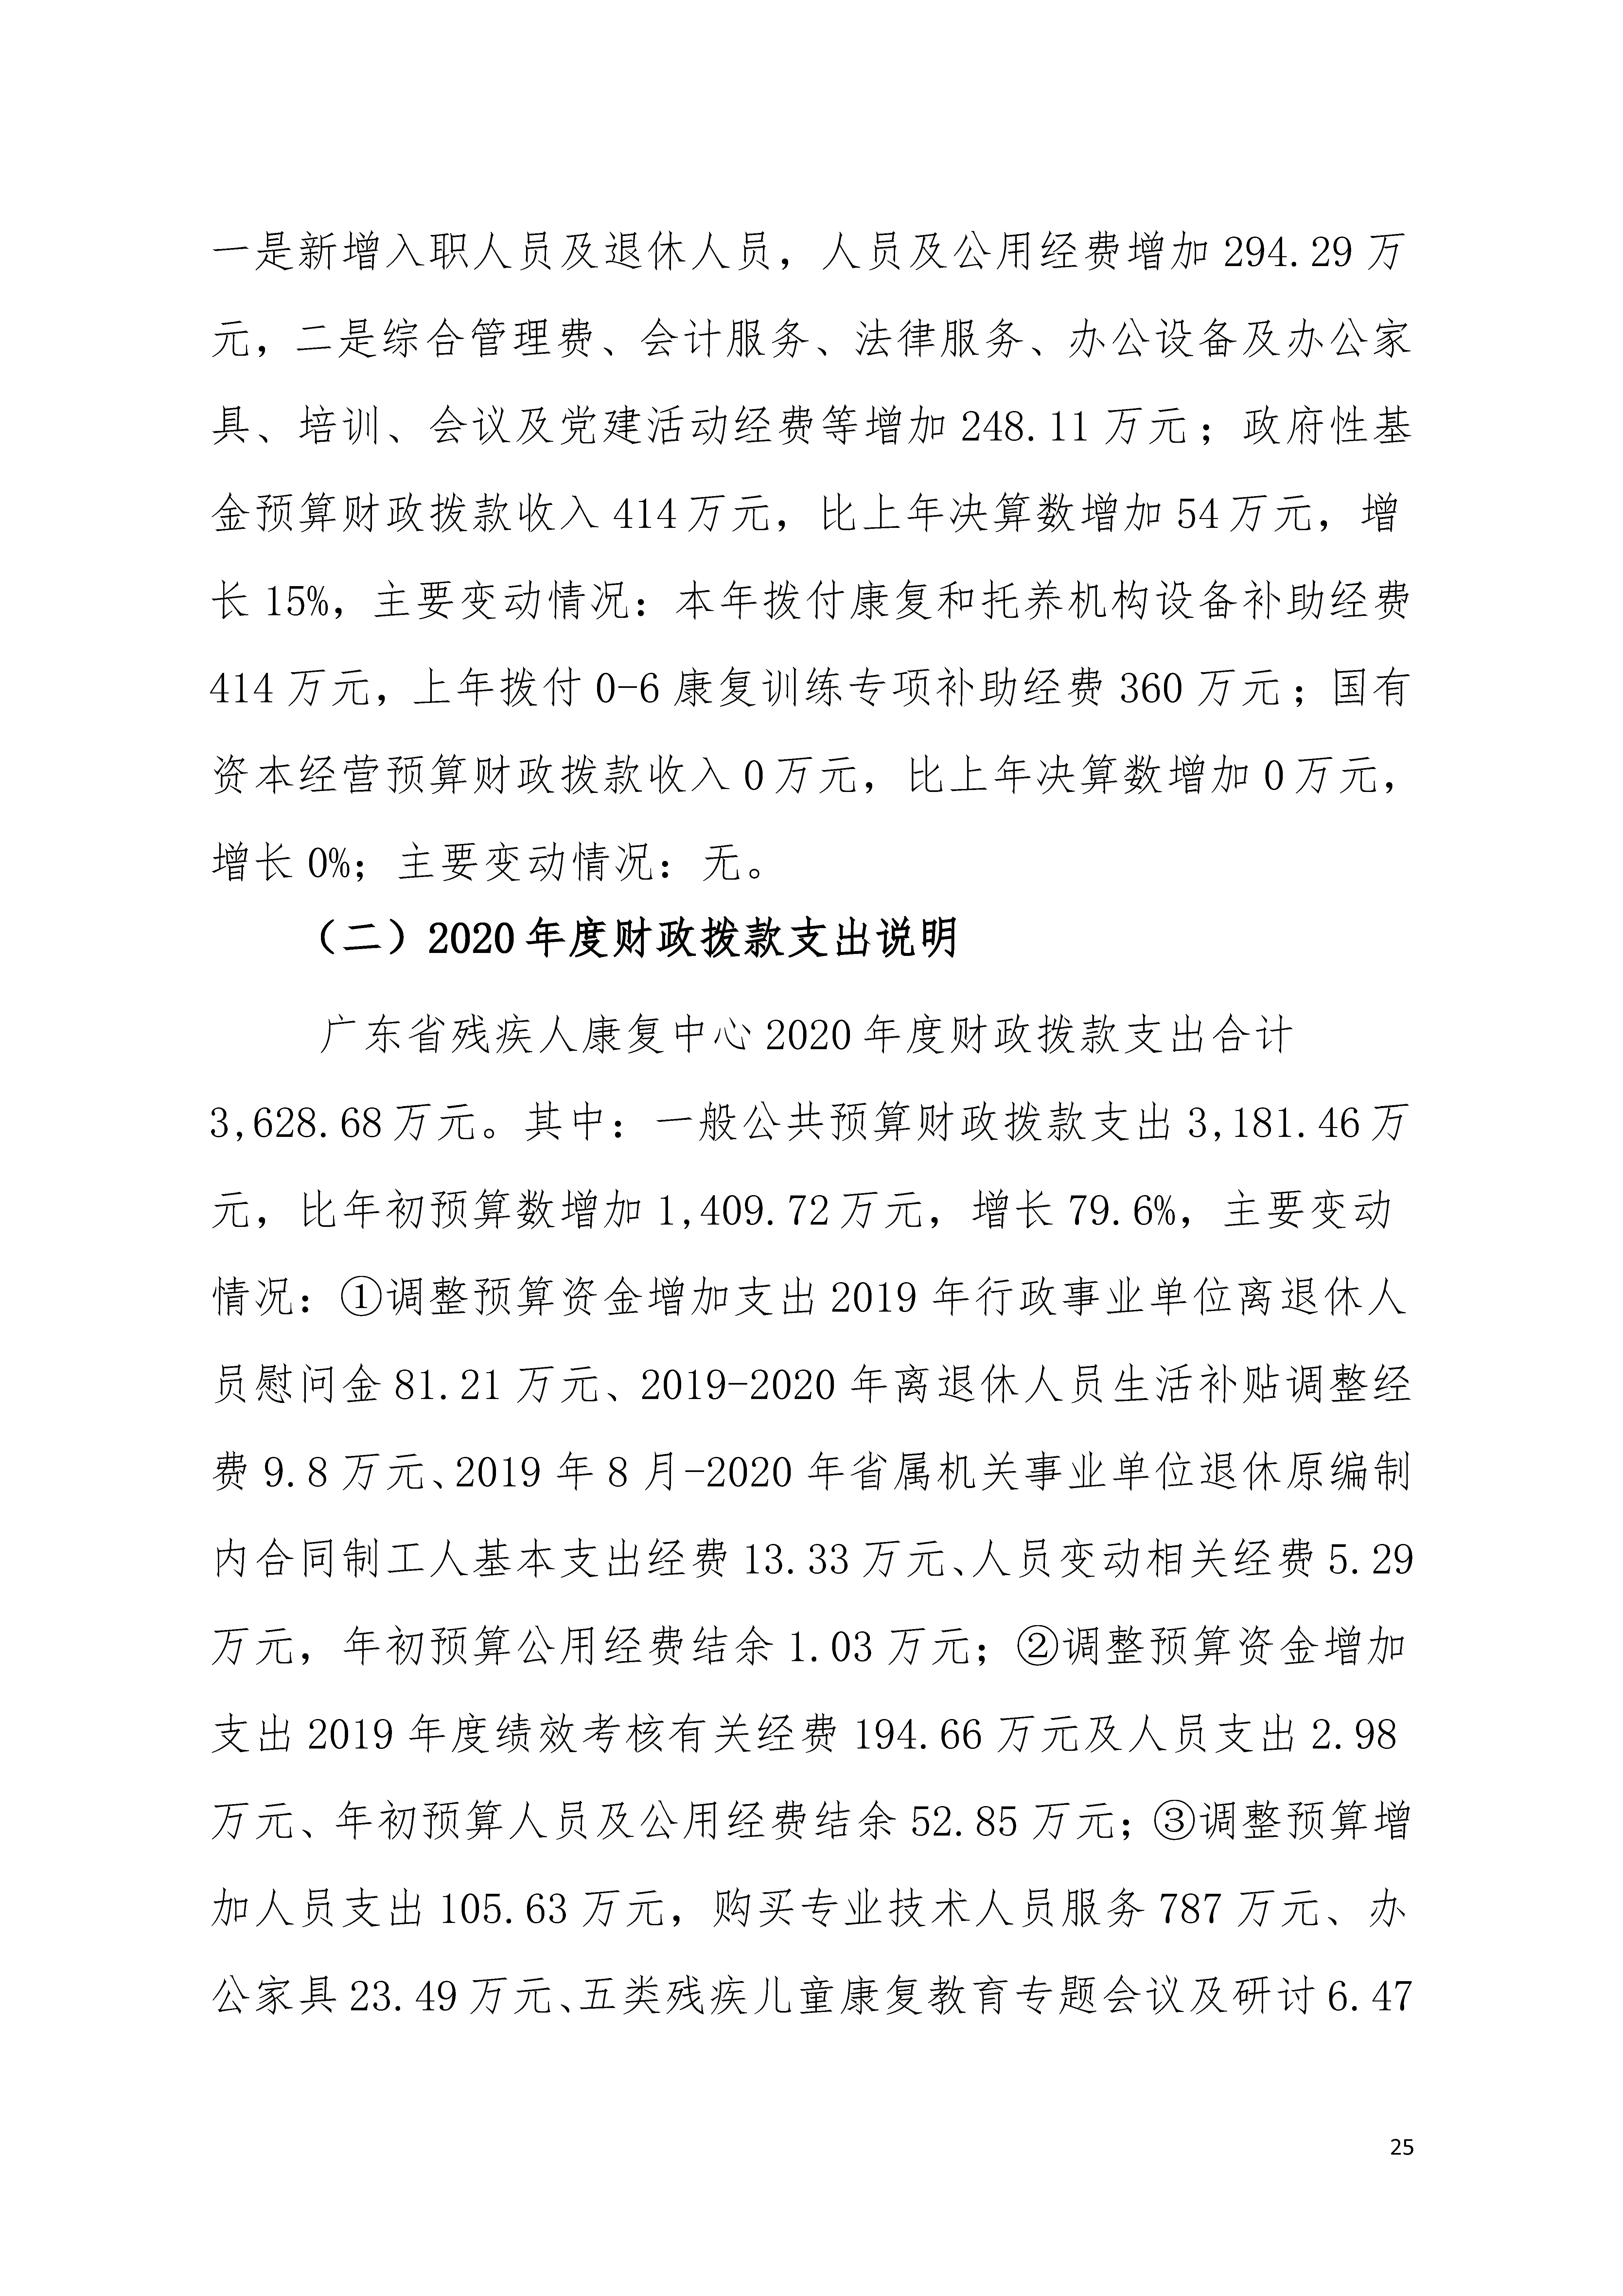 2020年广东省残疾人康复中心部门决算_页面_25.jpg